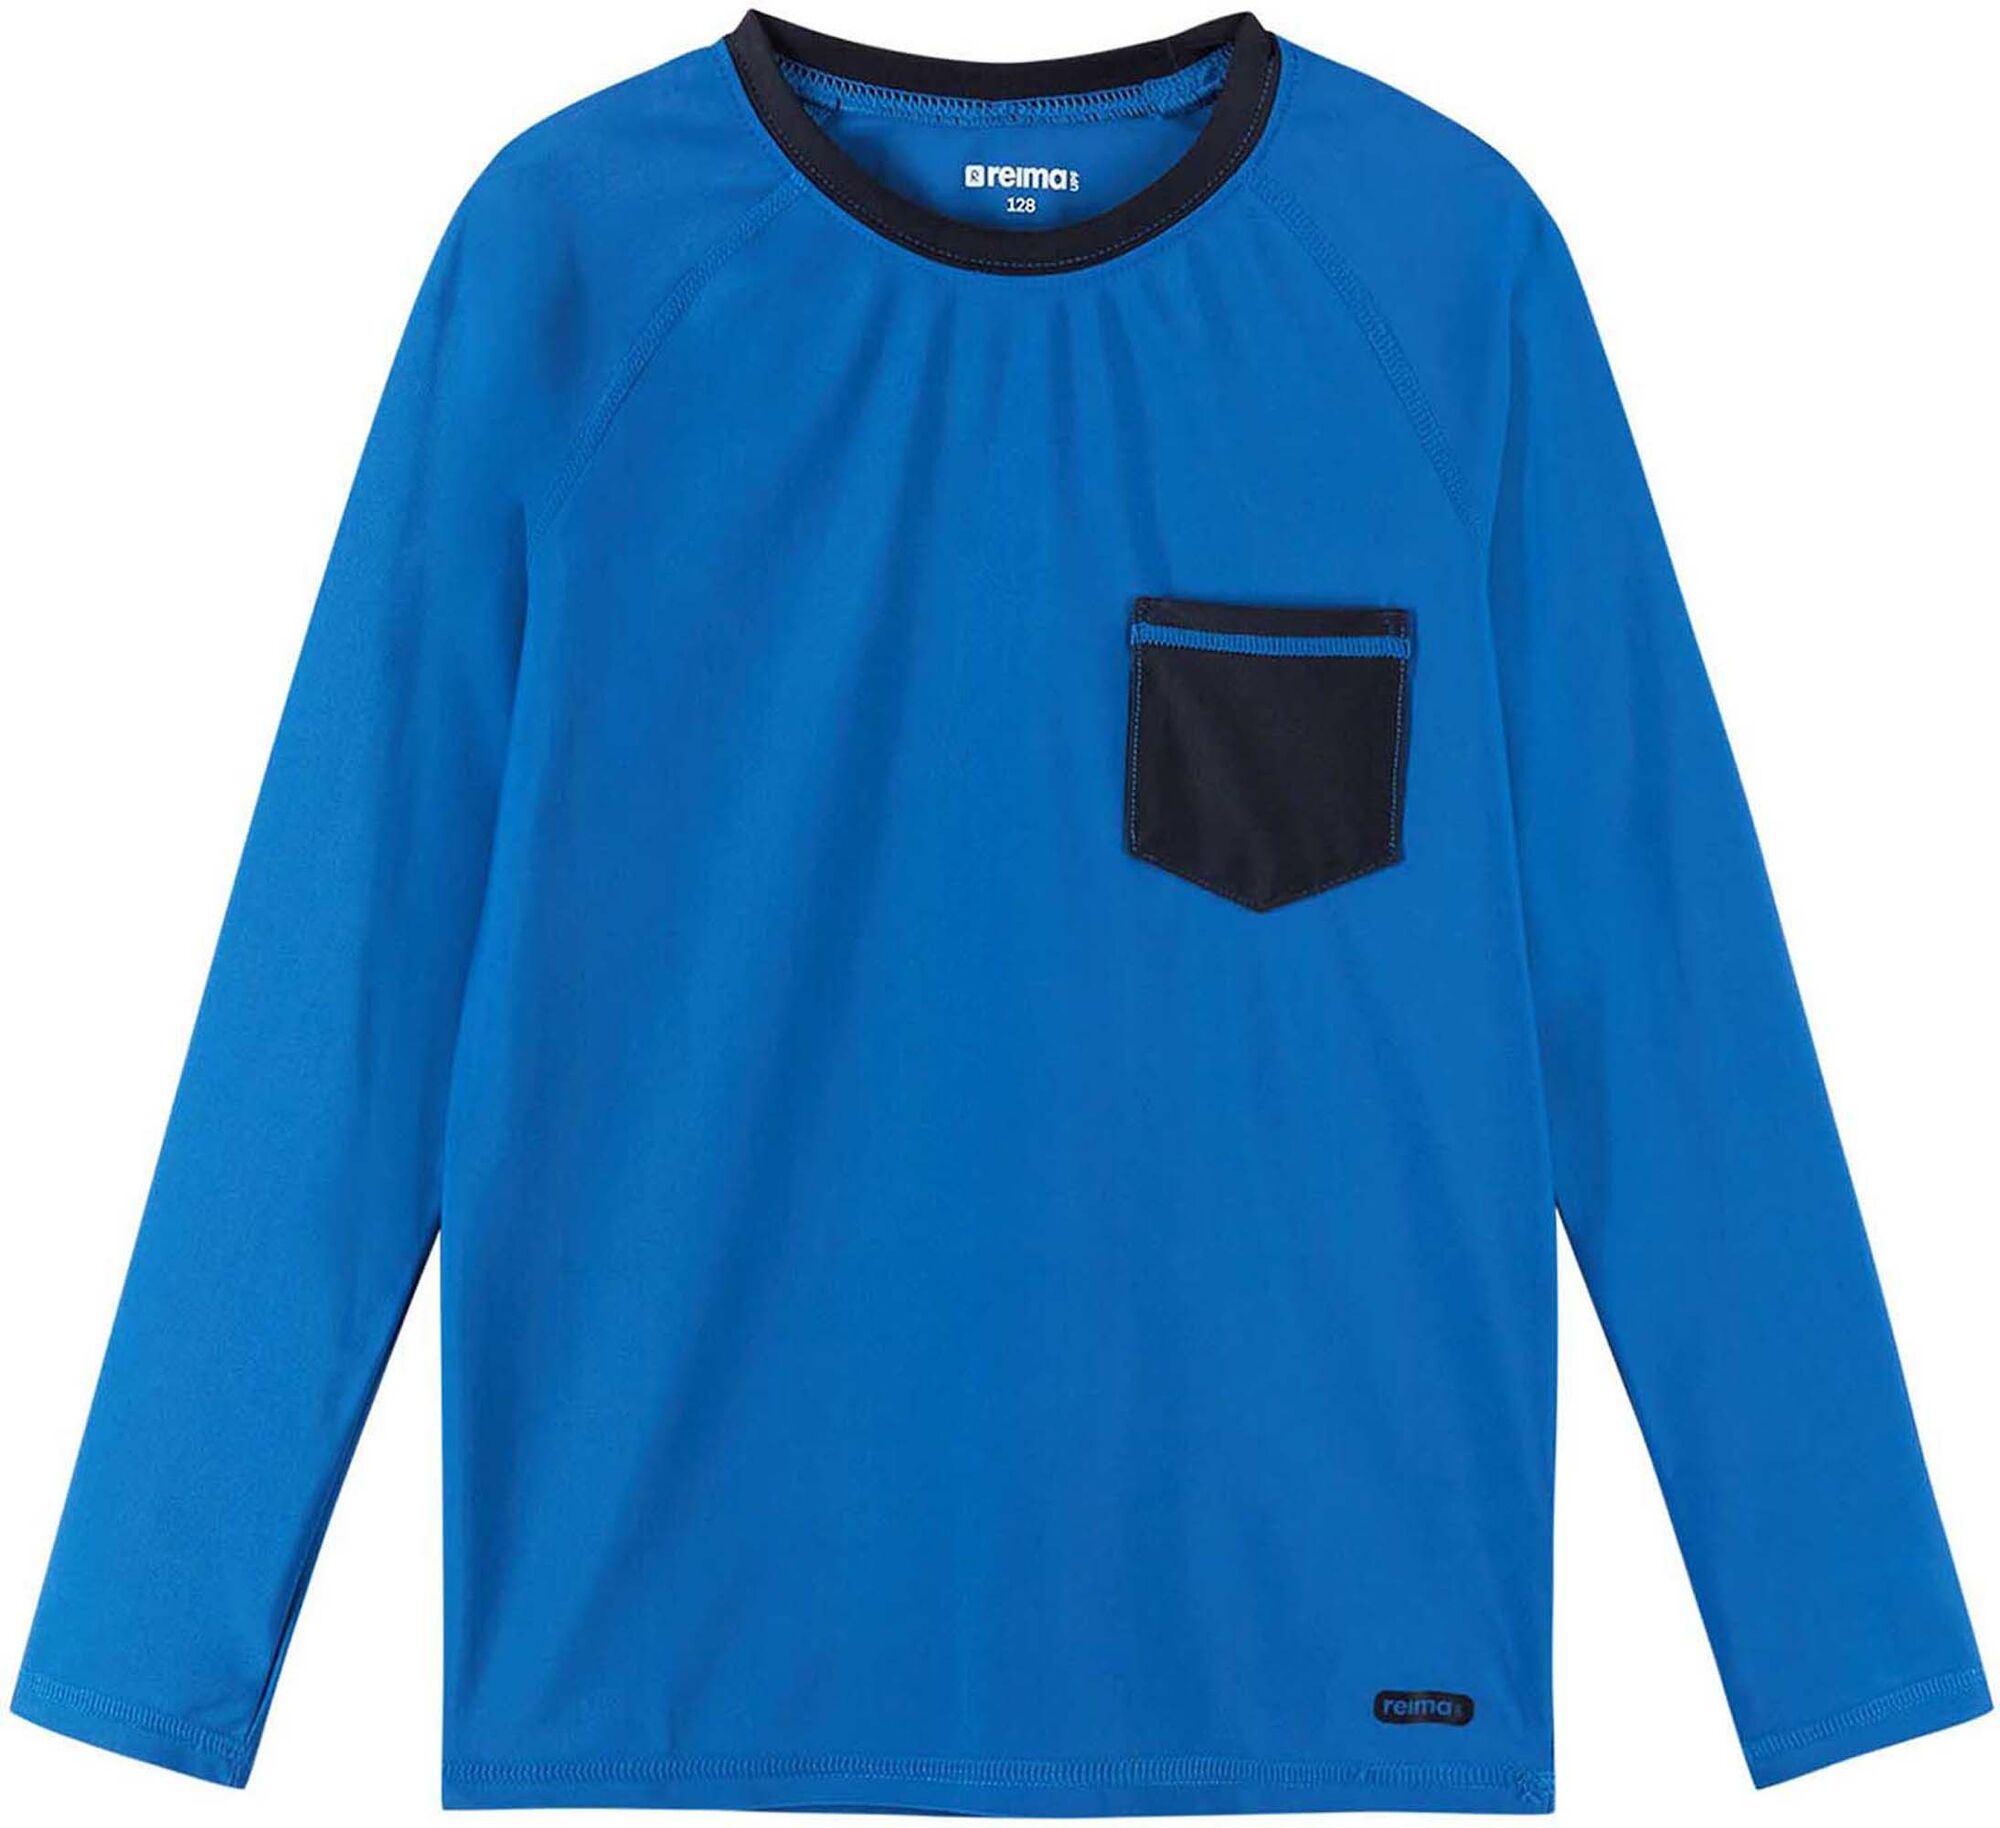 Reima Kroolaus UV-tröja Blue 110